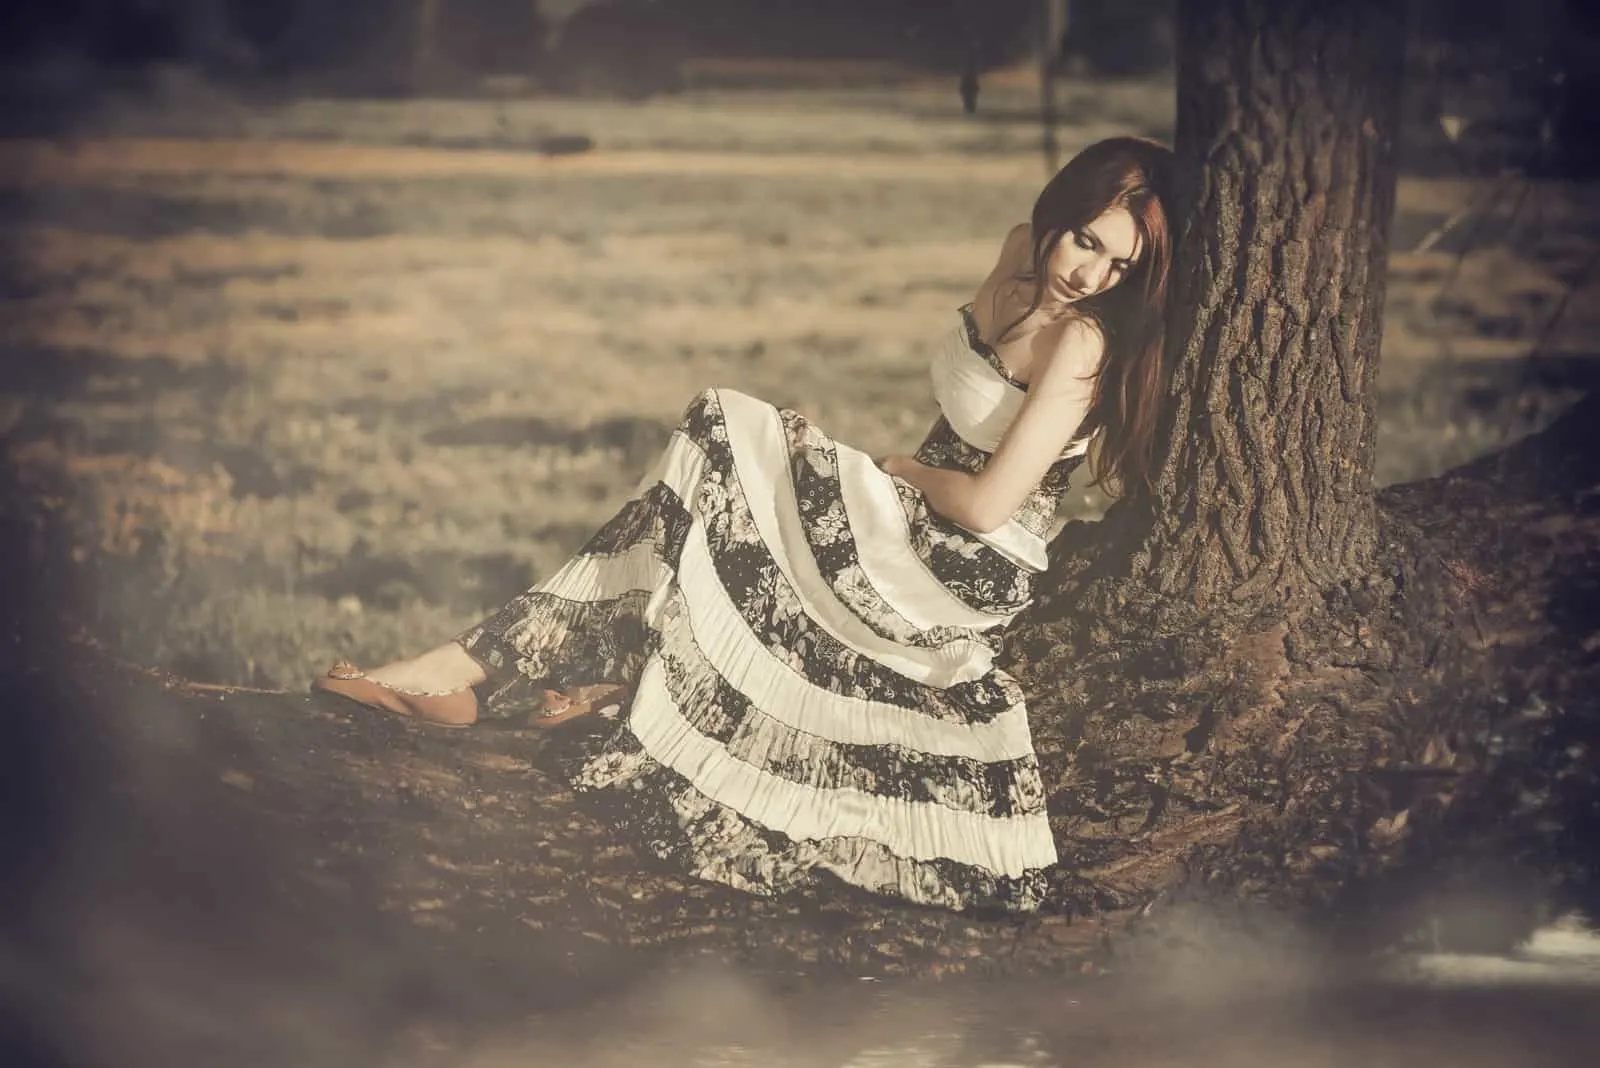 Unter dem Baum sitzt eine traurige Frau in einem schwarz-weißen Kleid